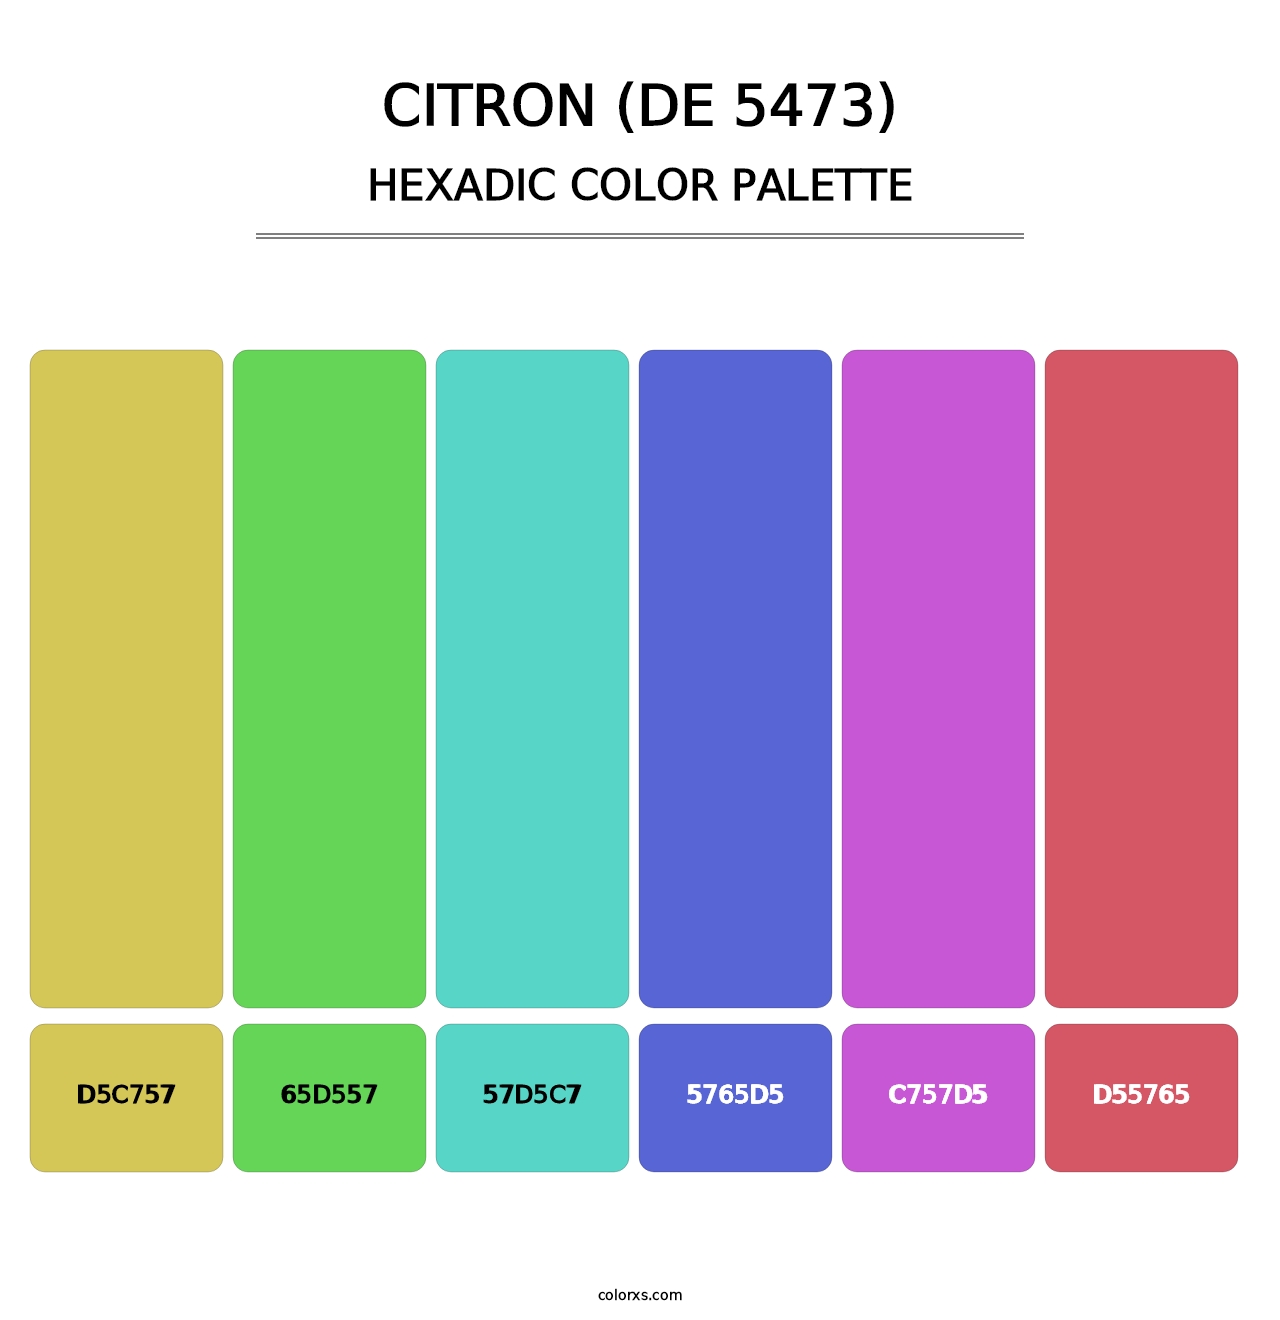 Citron (DE 5473) - Hexadic Color Palette